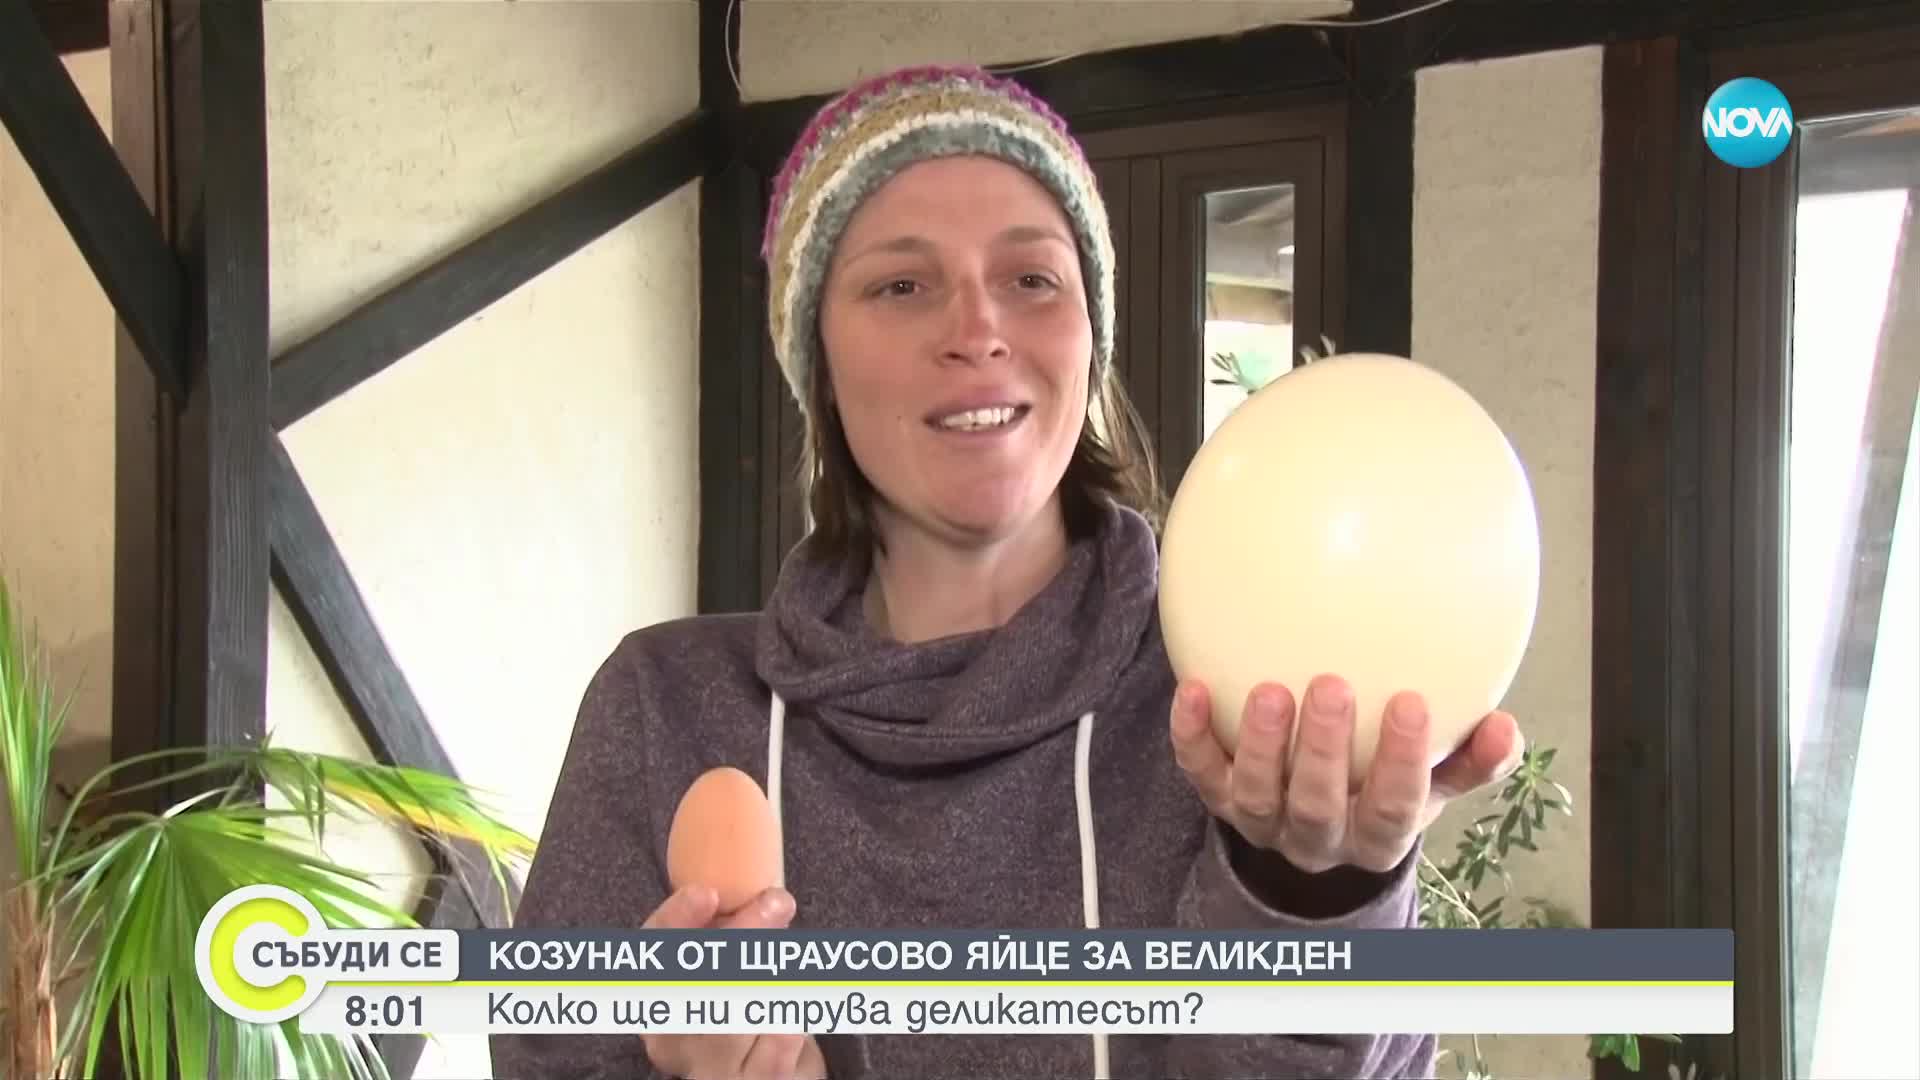 Възможно ли е да се направи козунак с яйце от щраус